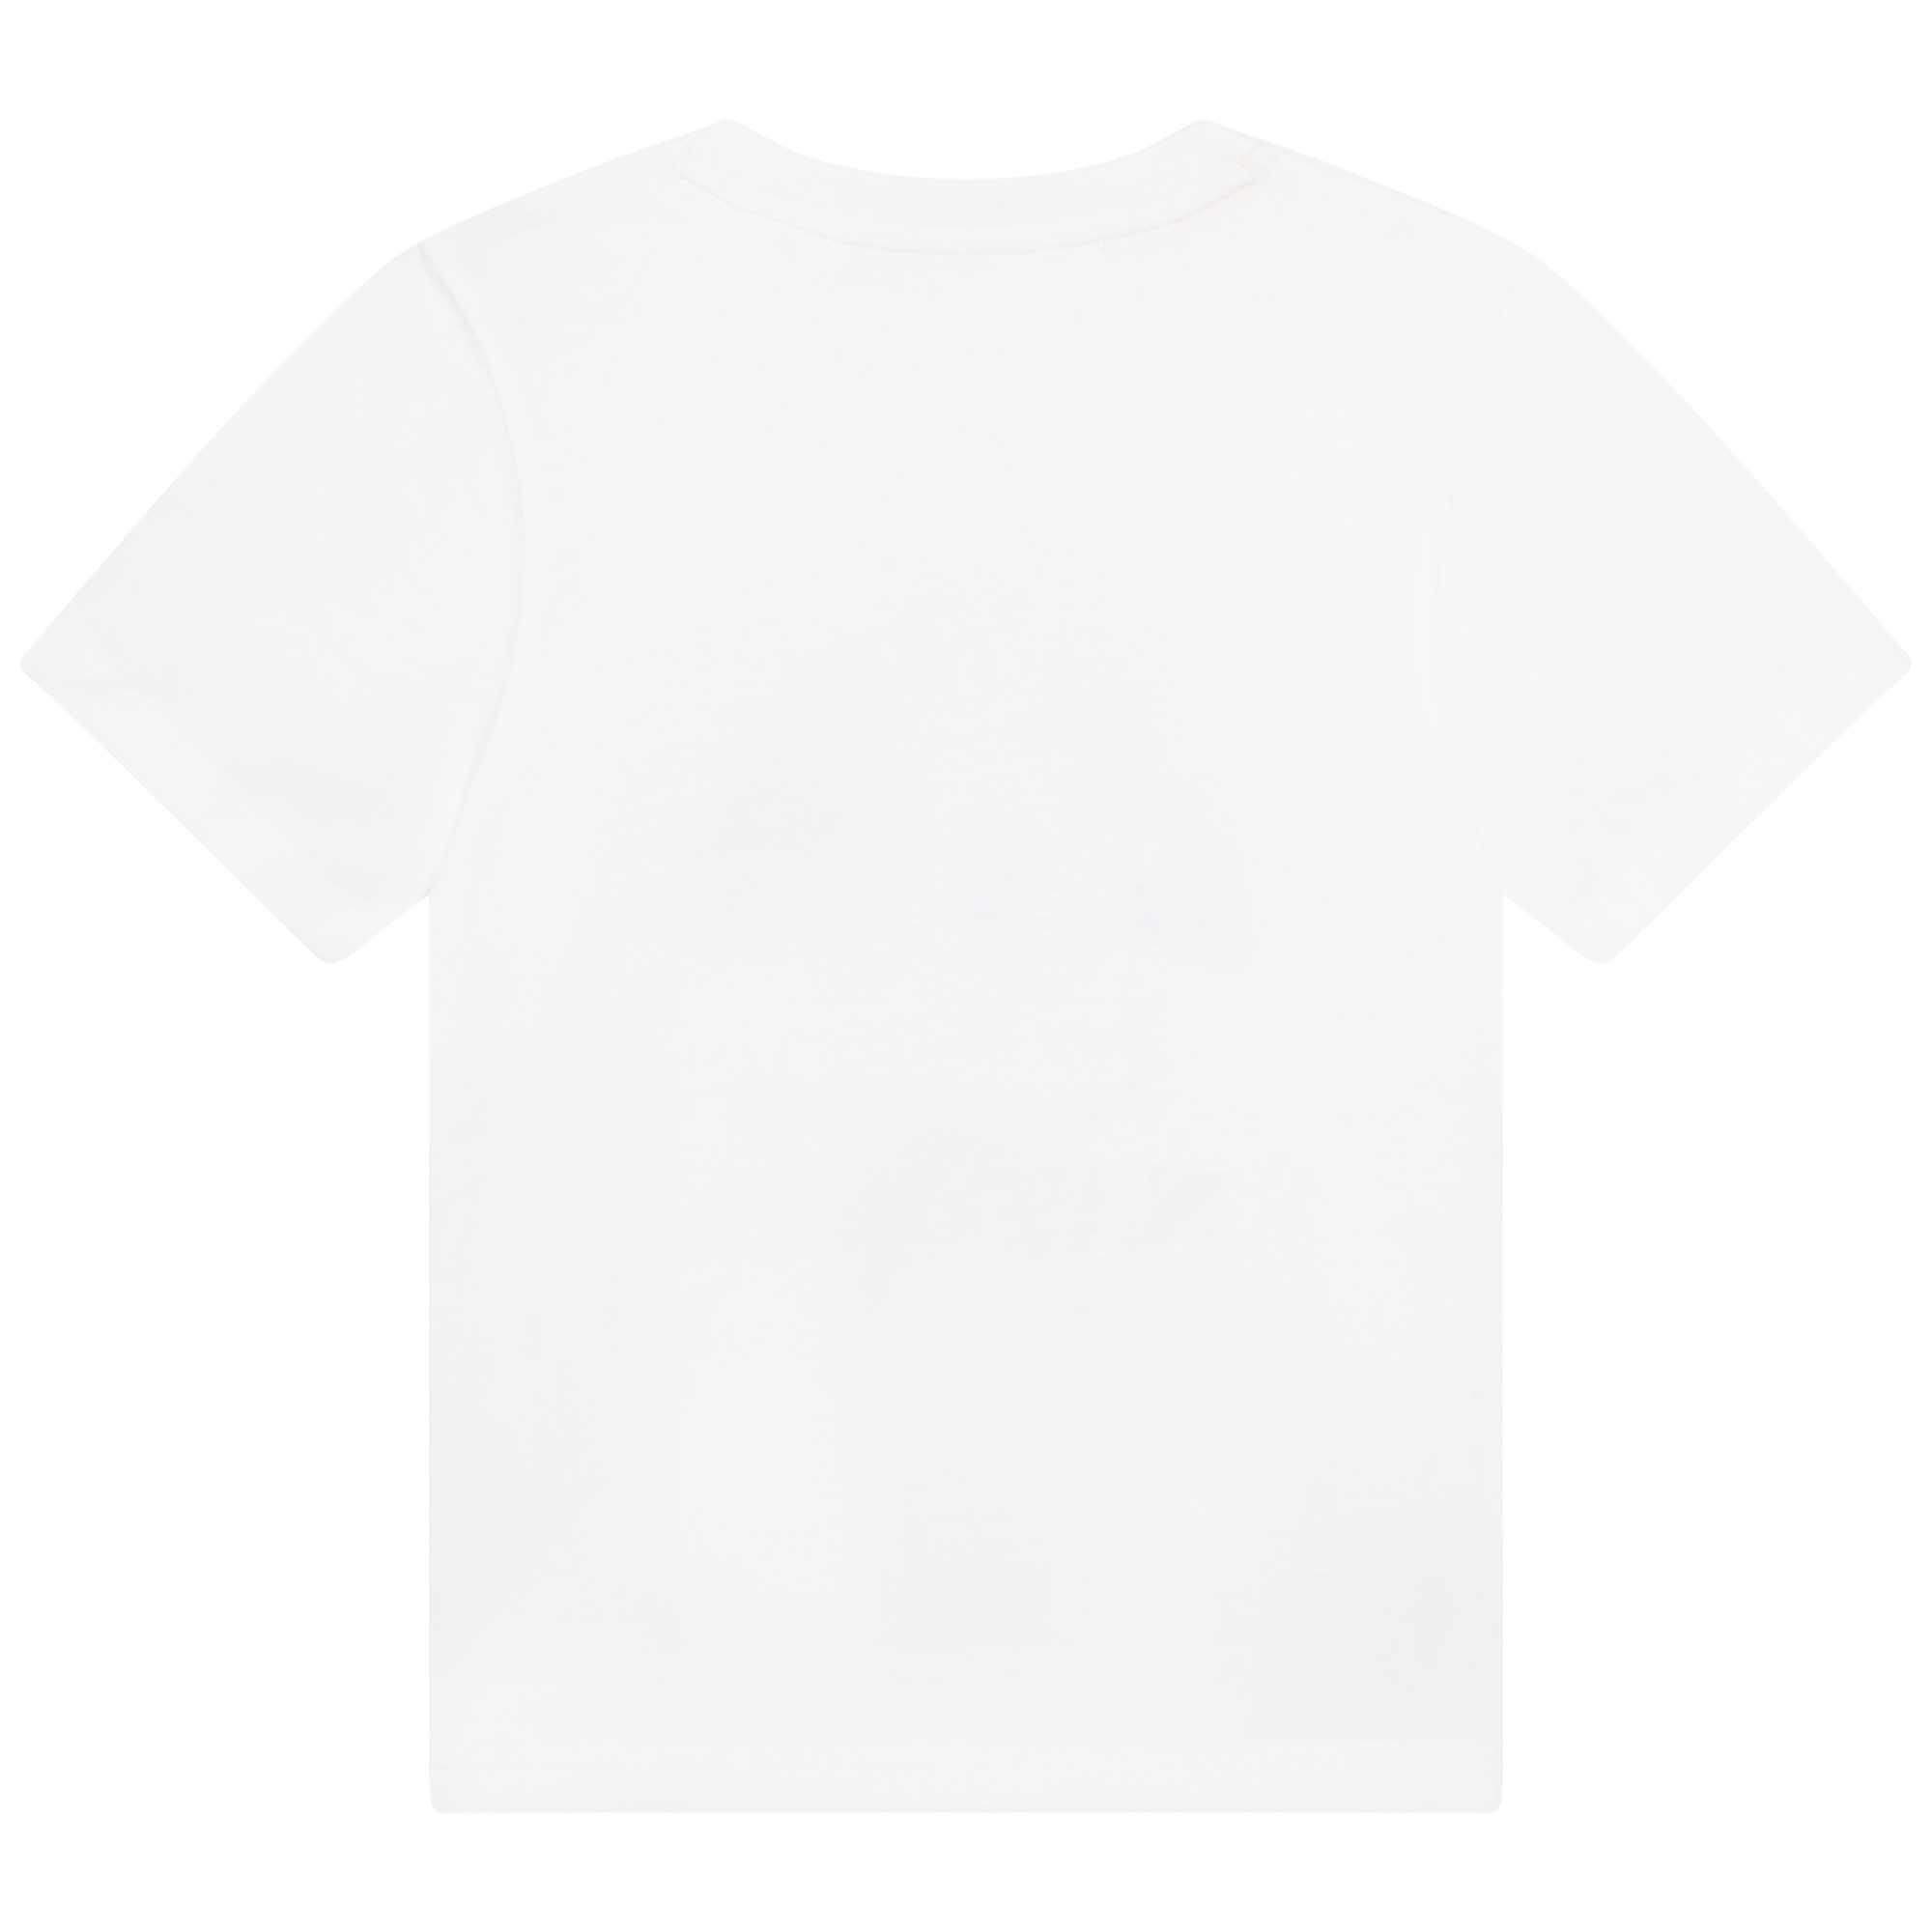 T-Shirt mit Berg-Print TIMBERLAND Für JUNGE